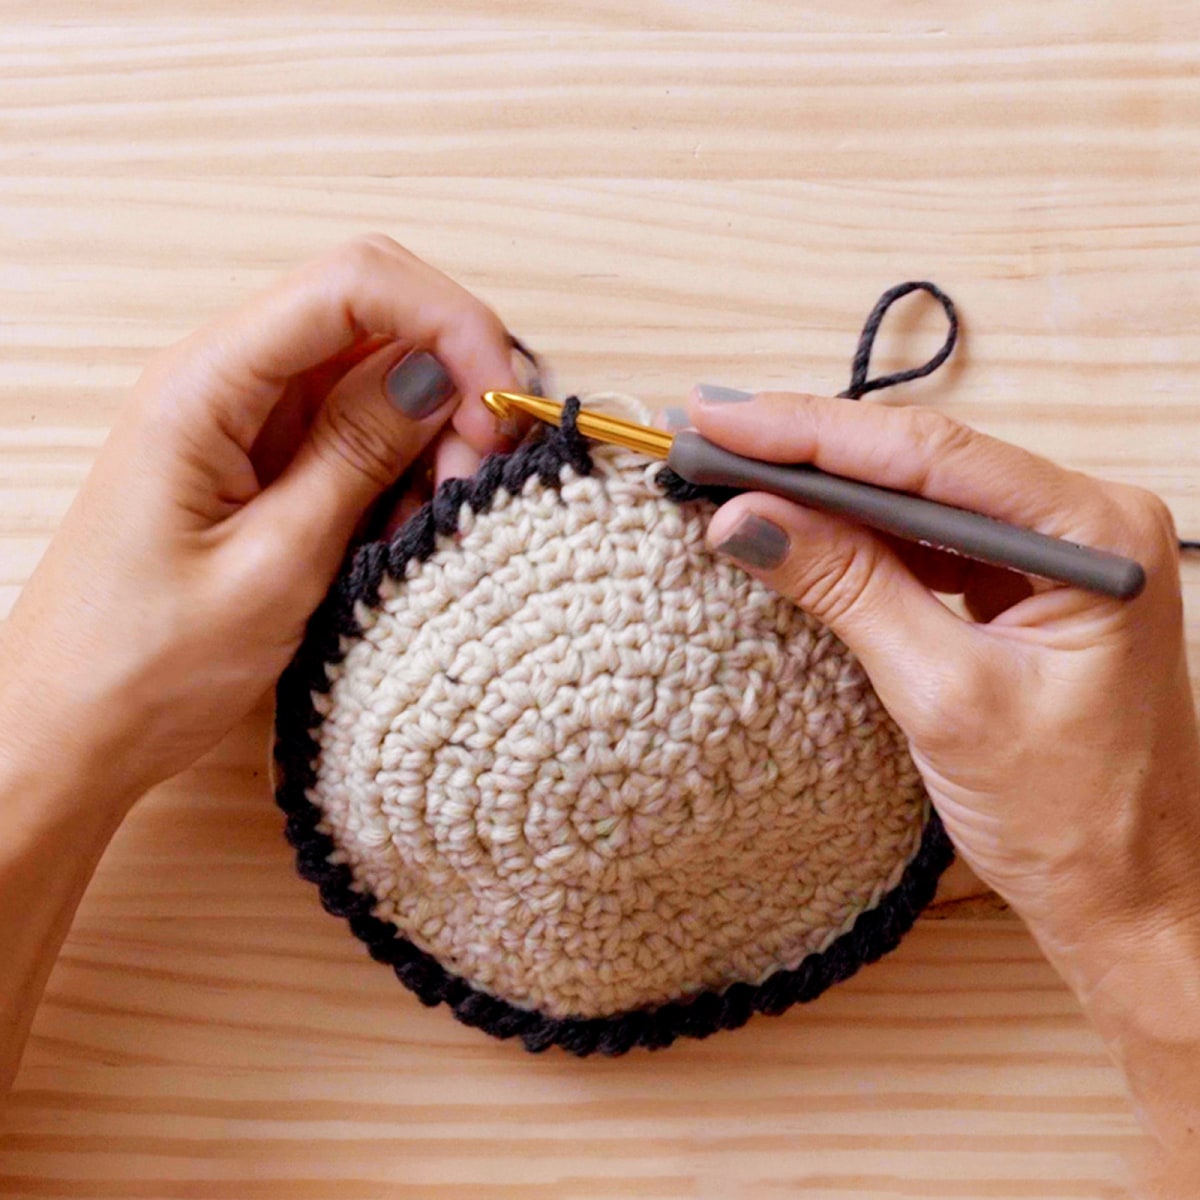 marxismo Retirada Rubí Tutorial Crochet: cómo tejer un monedero con técnica circular | Domestika